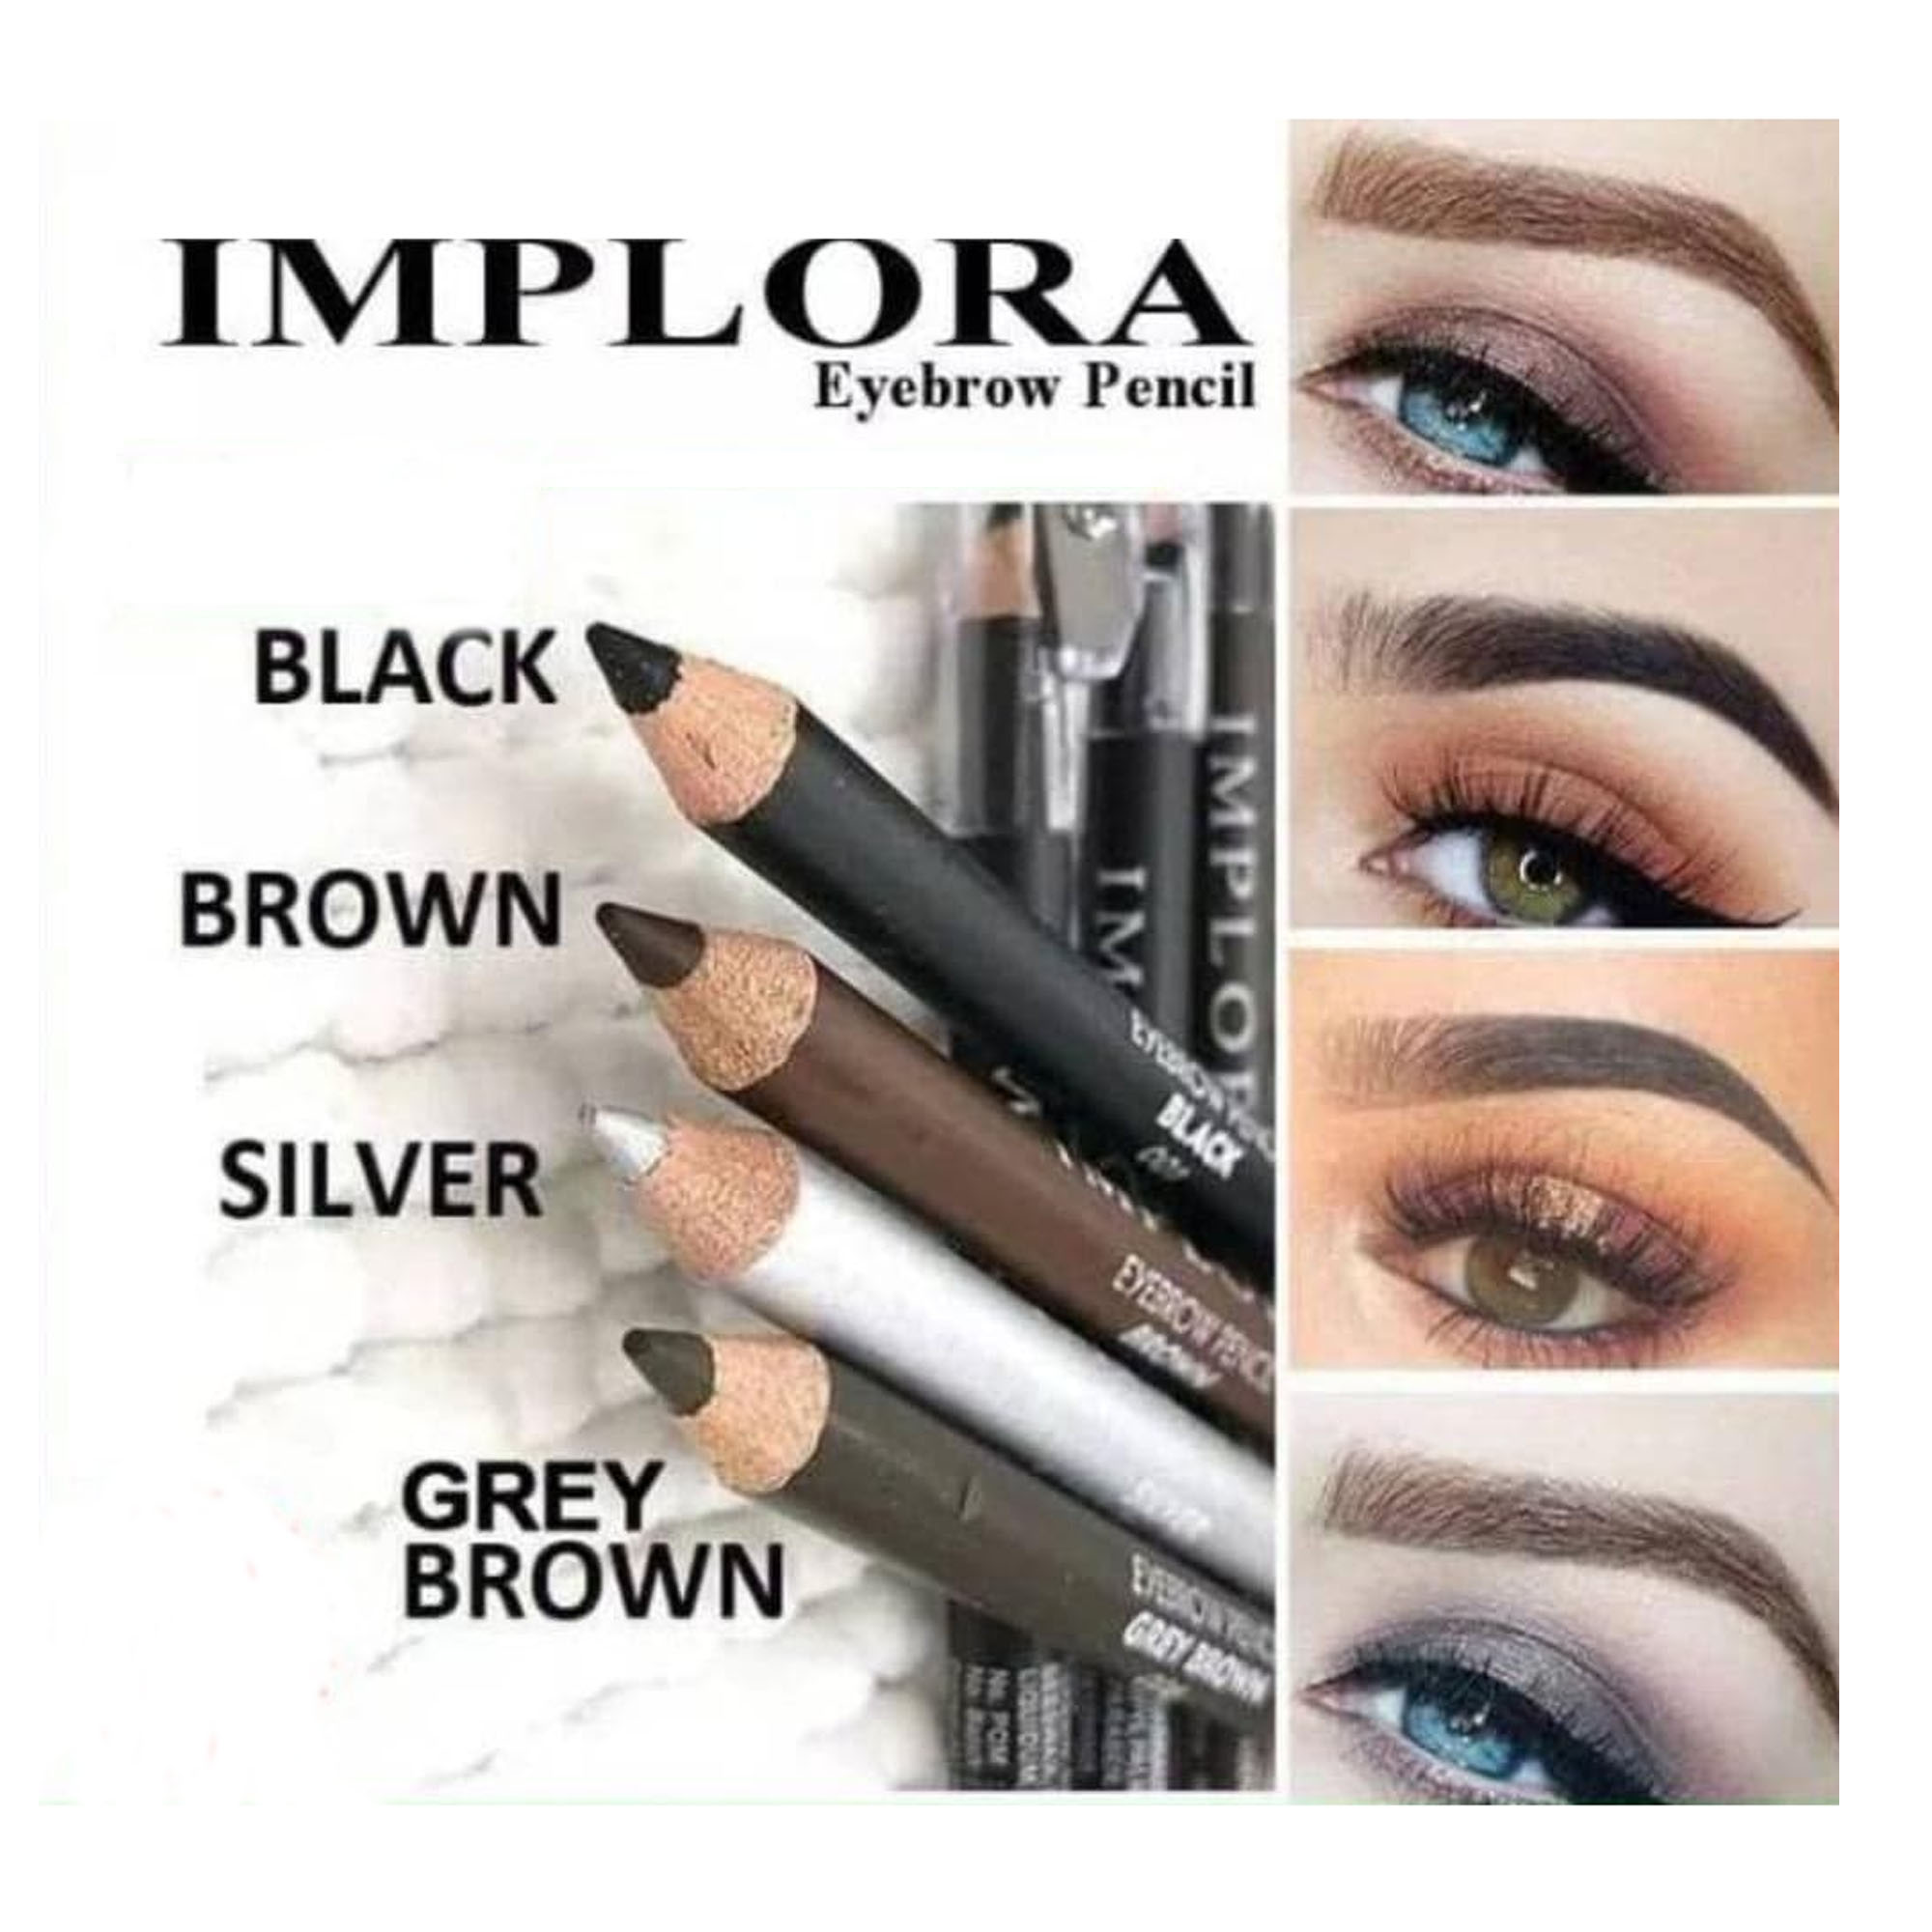 Implora Pensil Alis 2 in1 2,5 gr - Eyebrow Pencil Original - Tersedia Warna Black, Brown, Silver, Grey Brown, Dark Brown